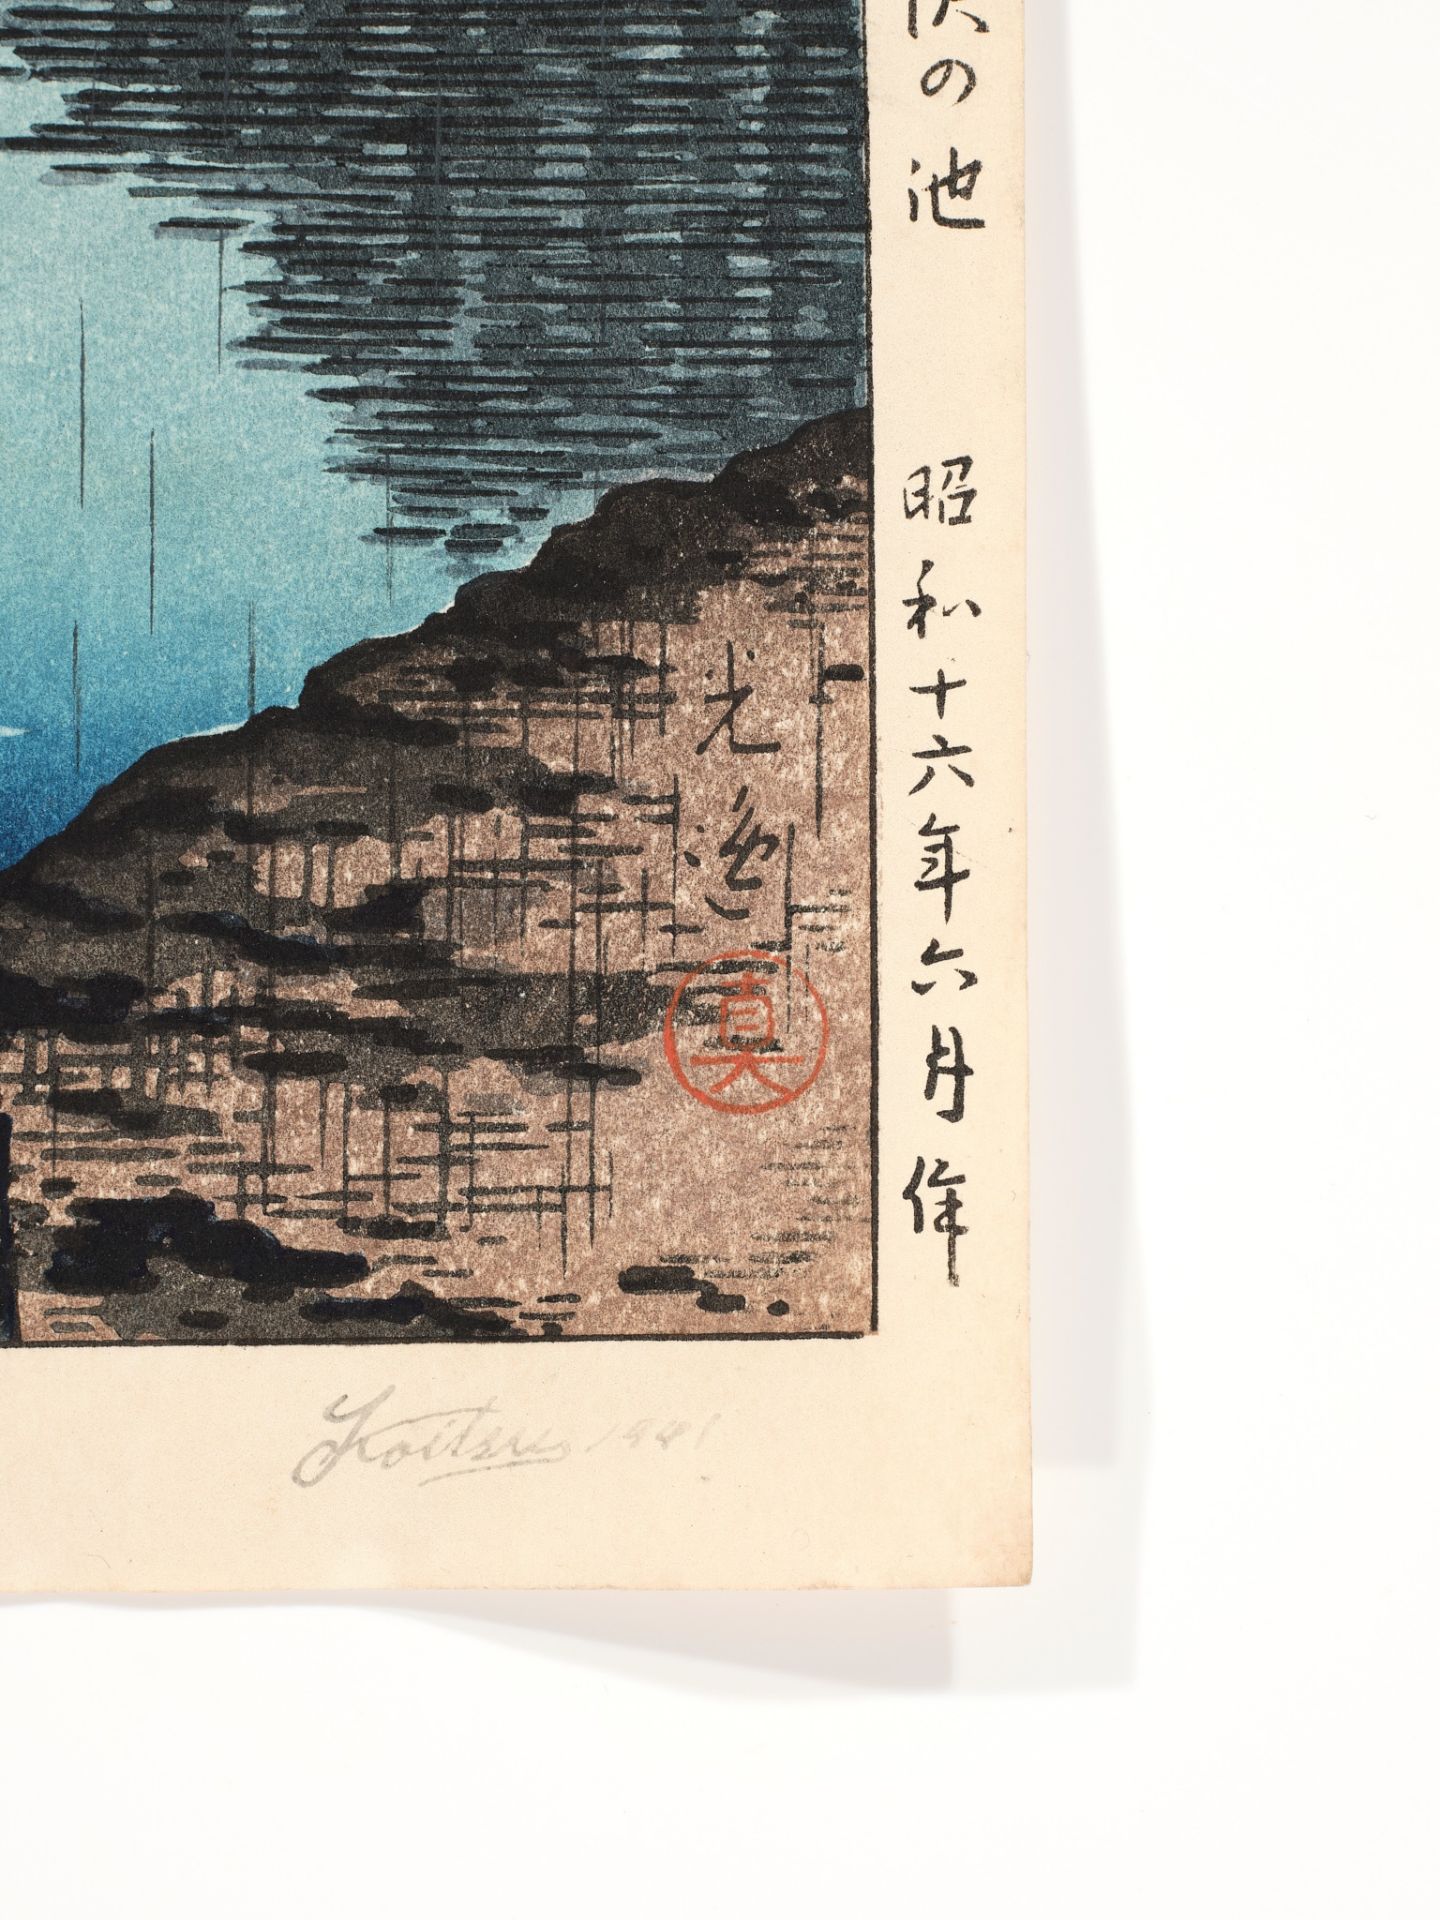 TSUCHIYA KOITSU (1870-1949), THE POND OF SARUSAWA, NARA ON A RAINY EVENING - Image 3 of 7